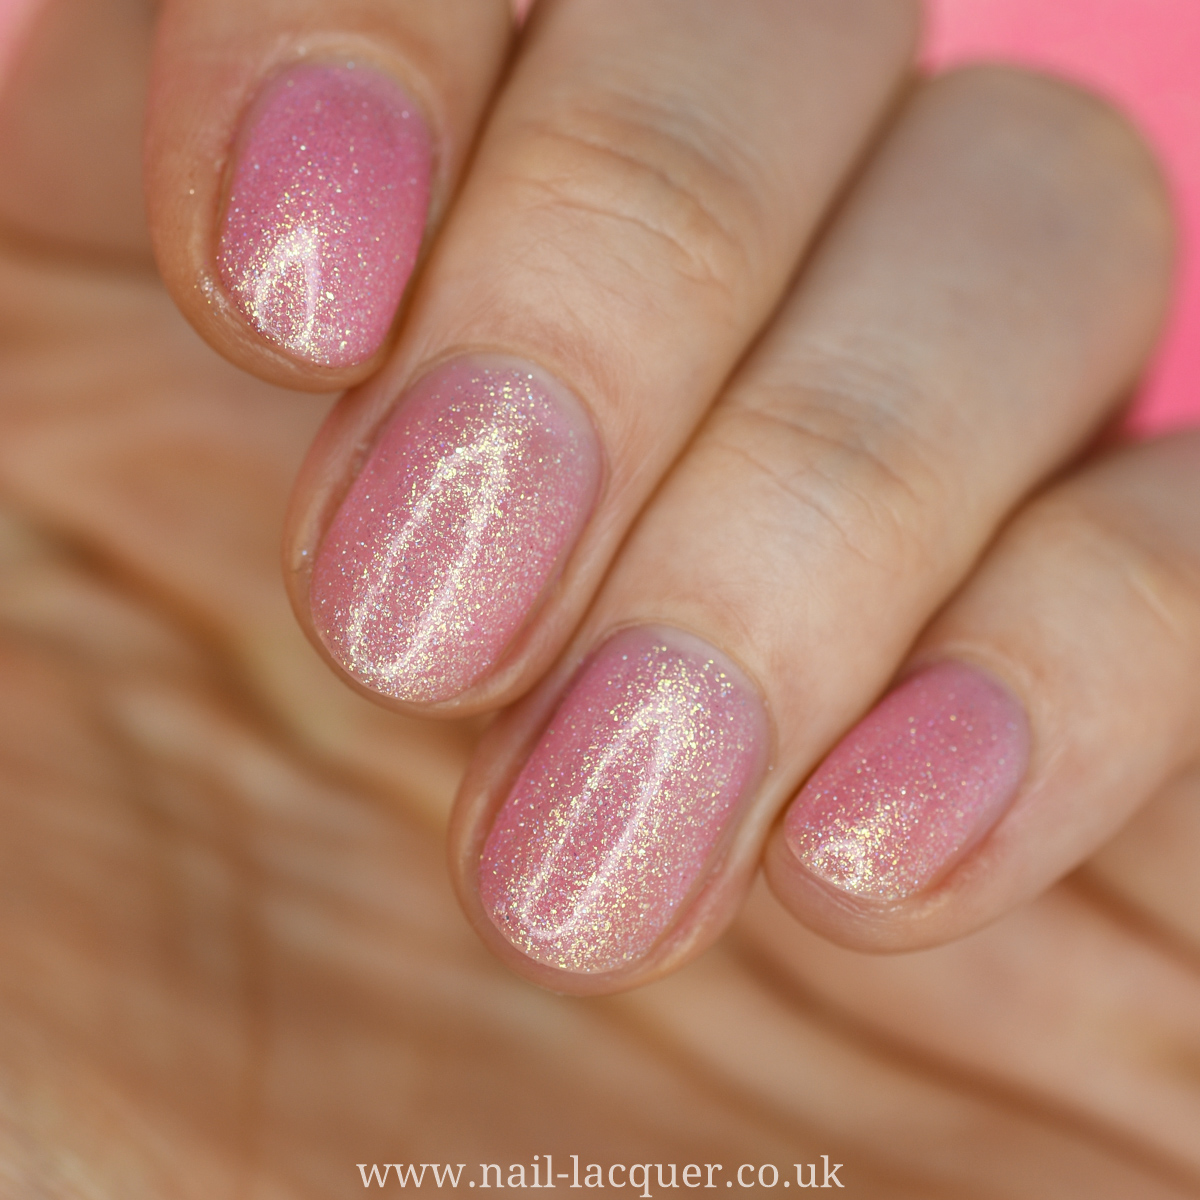 Reflective Nail Polish Quiet and Daring A Light Dusty Pink Nail Polish With  Silver Reflective Glitters. - Etsy